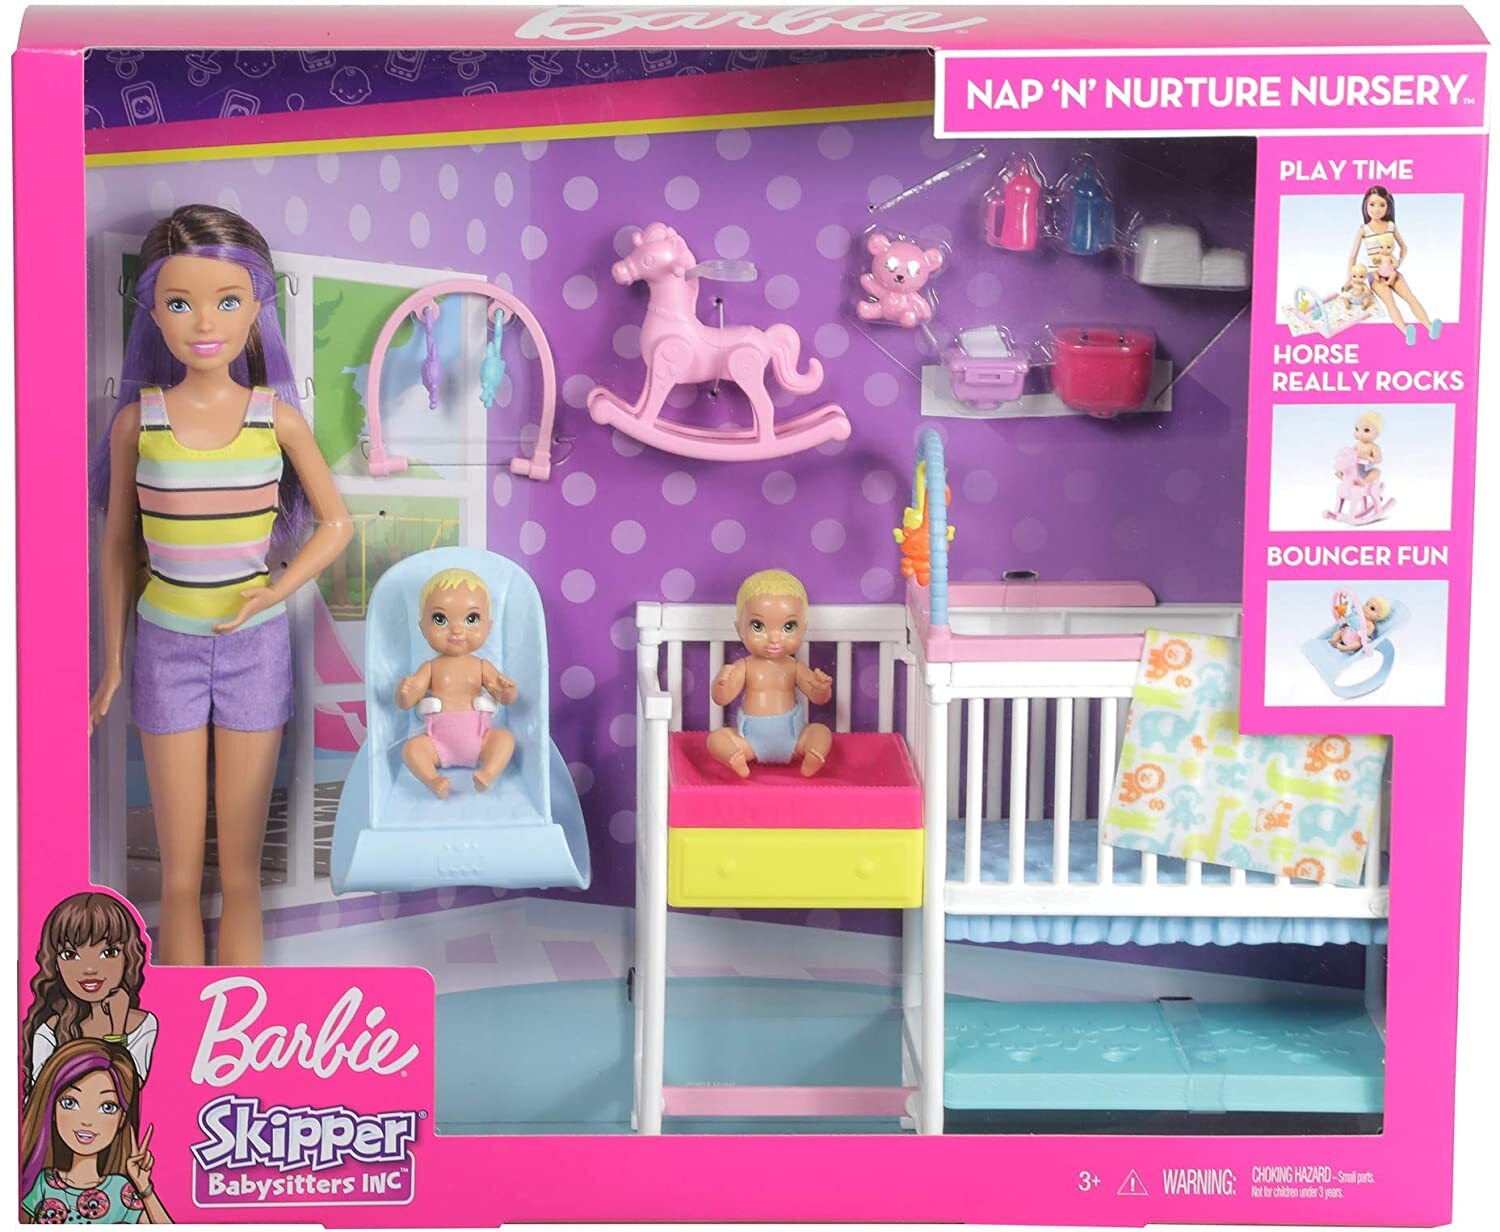 Barbie Skipper Babysitters Inc - Nap n Nurture Nursery